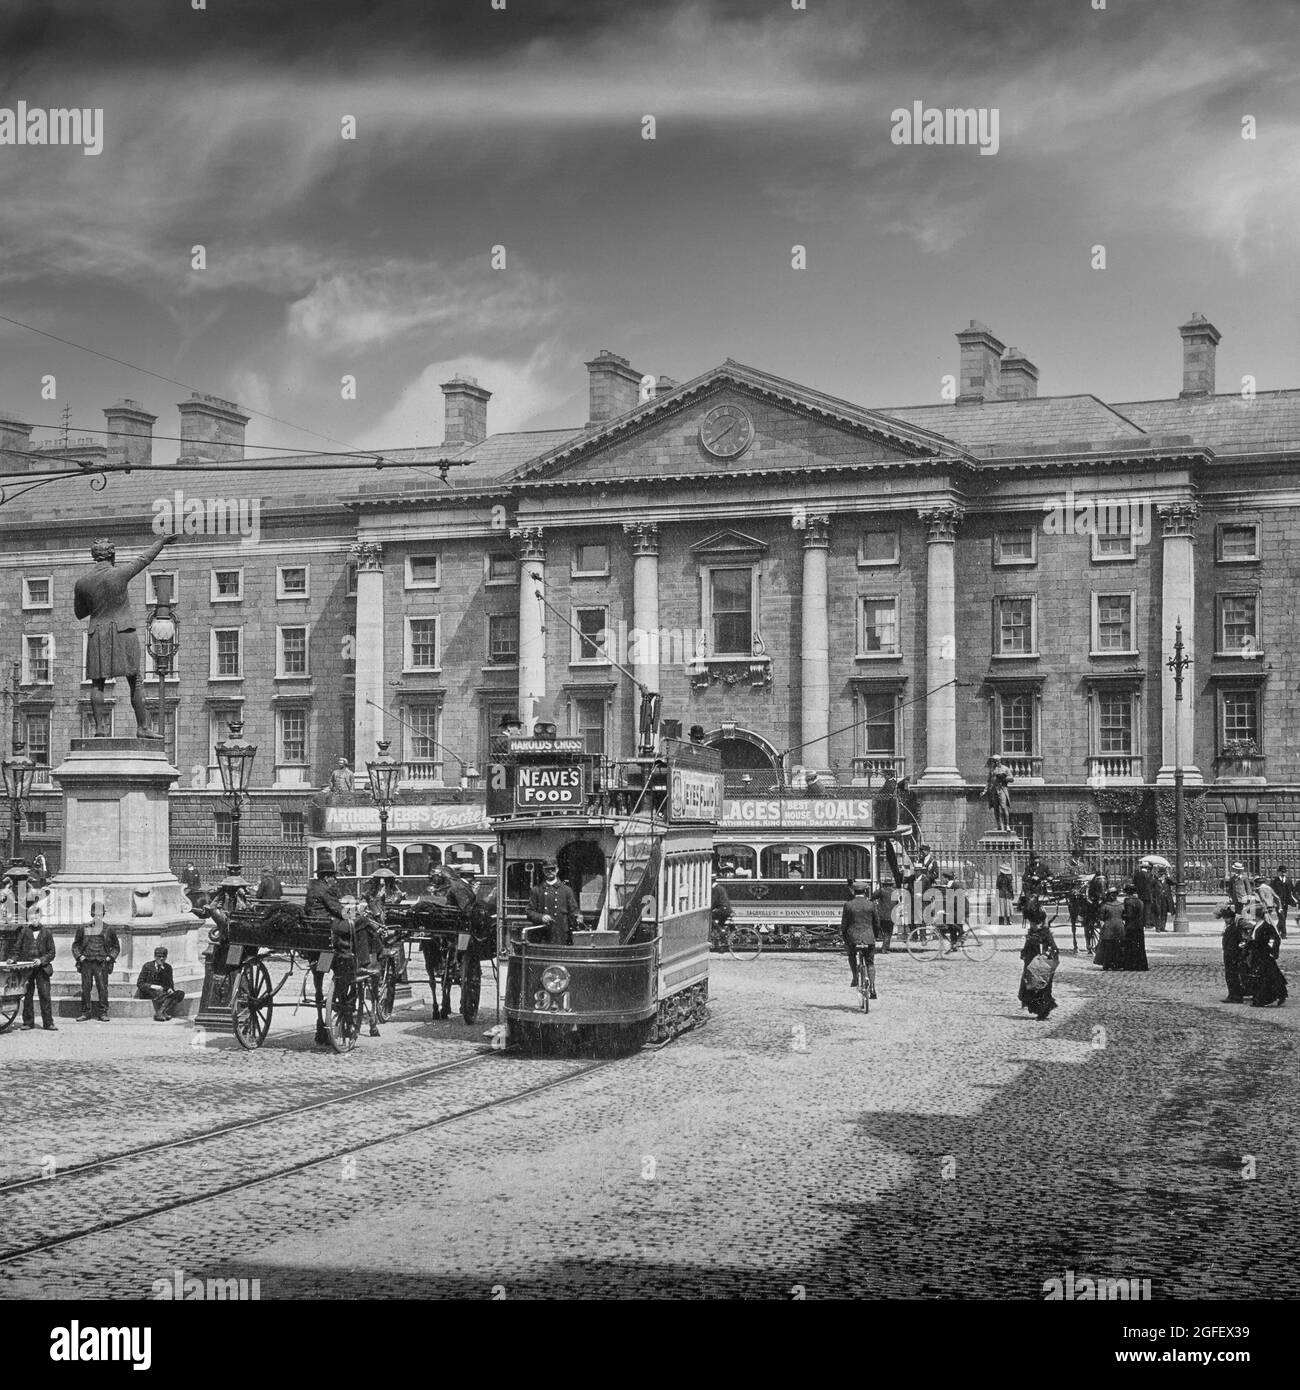 Una fotografia dei primi anni del XX secolo del Trinity College (Università) a College Green nel centro di Dublino, in Irlanda, con persone, veicoli trainati da cavalli e tram elettrici di nuova introduzione. Foto Stock